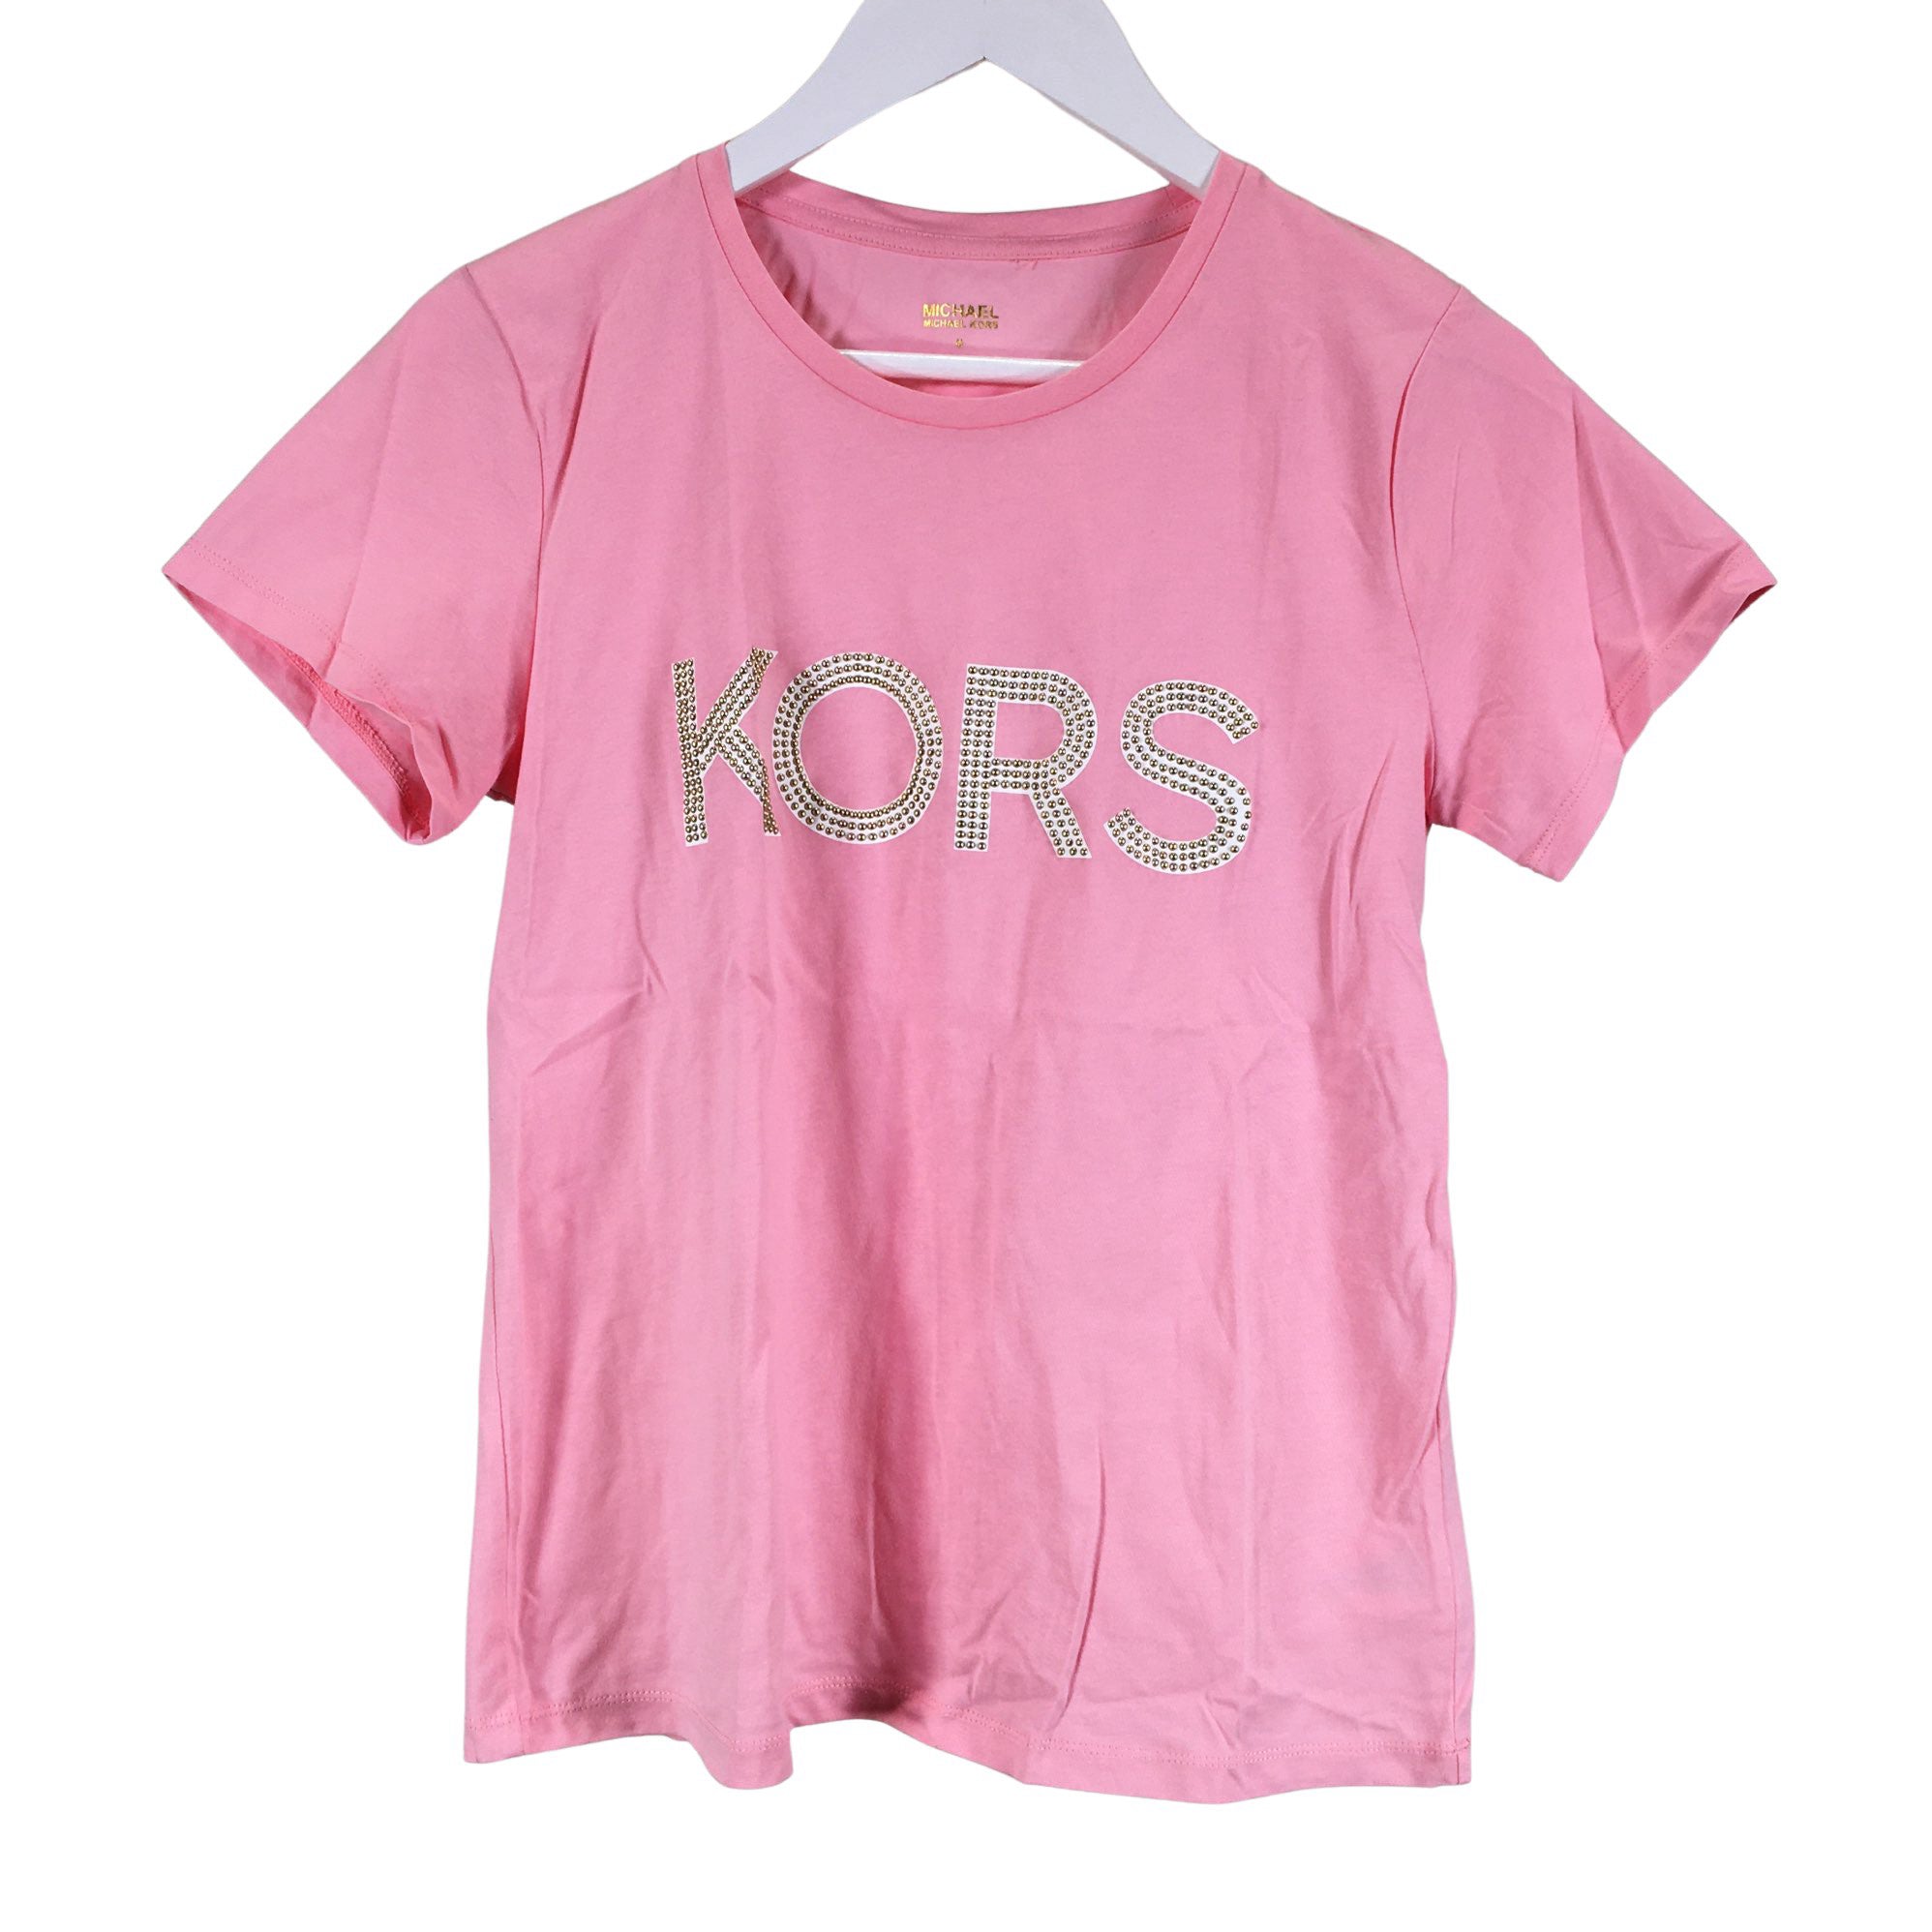 Women's Michael Kors T-shirt, size 38 (Light red) | Emmy